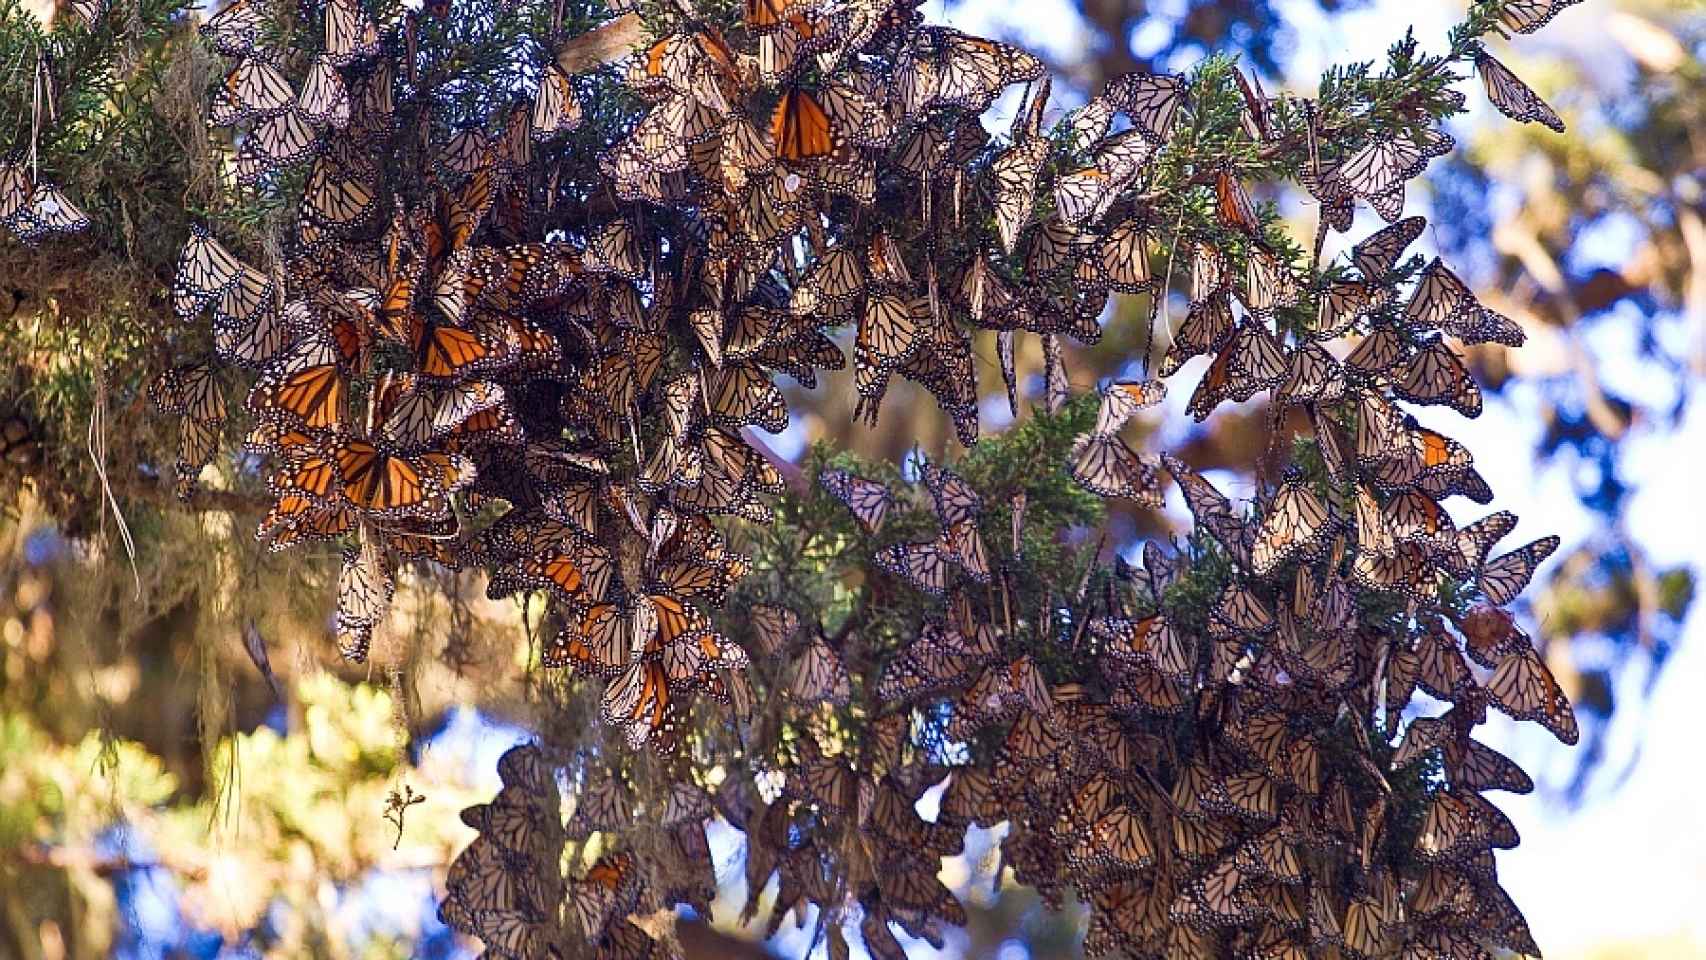 Mariposas Monarcas en Pacific Grove, California.